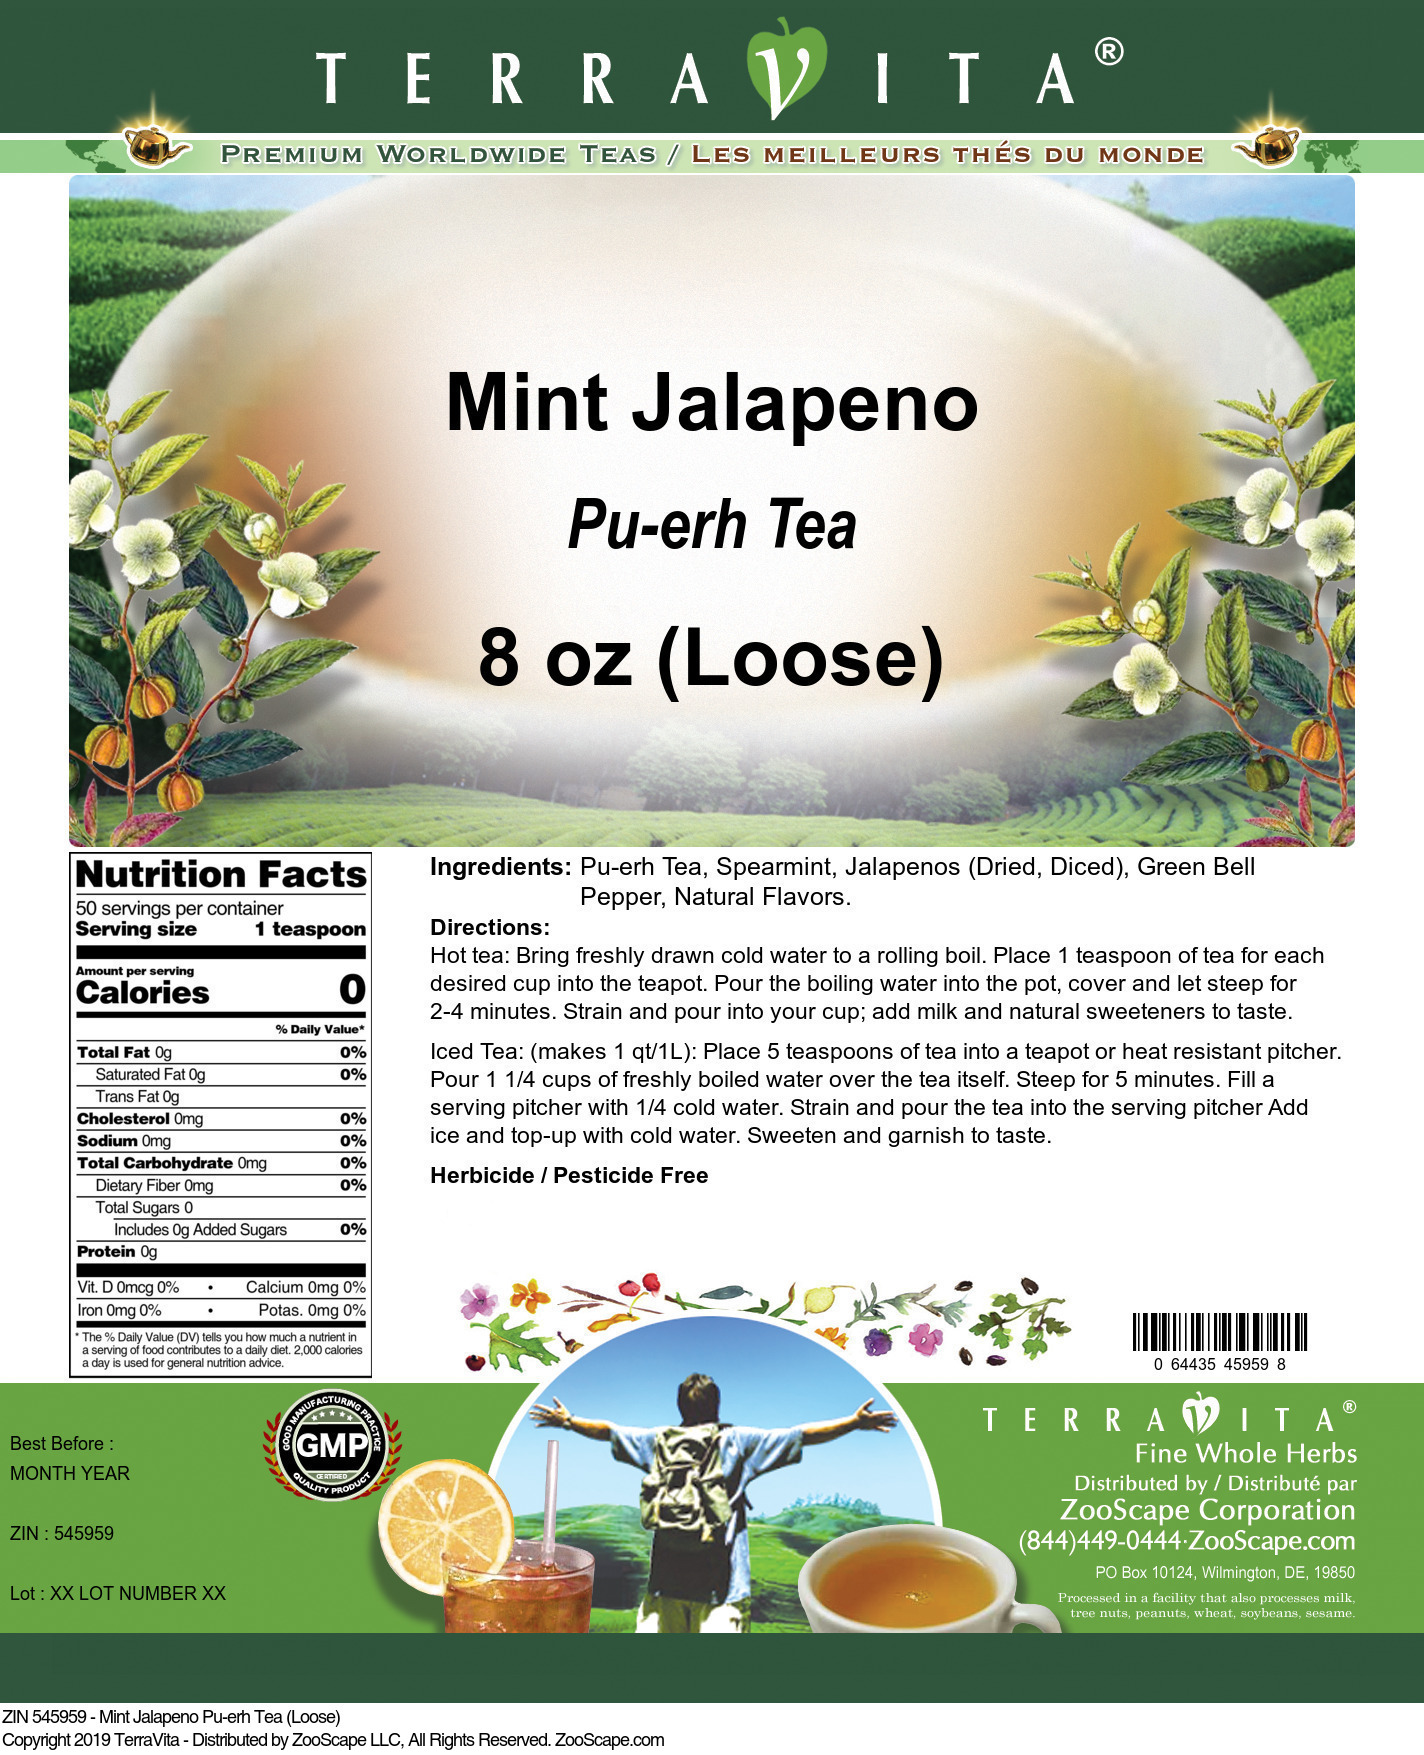 Mint Jalapeno Pu-erh Tea (Loose) - Label